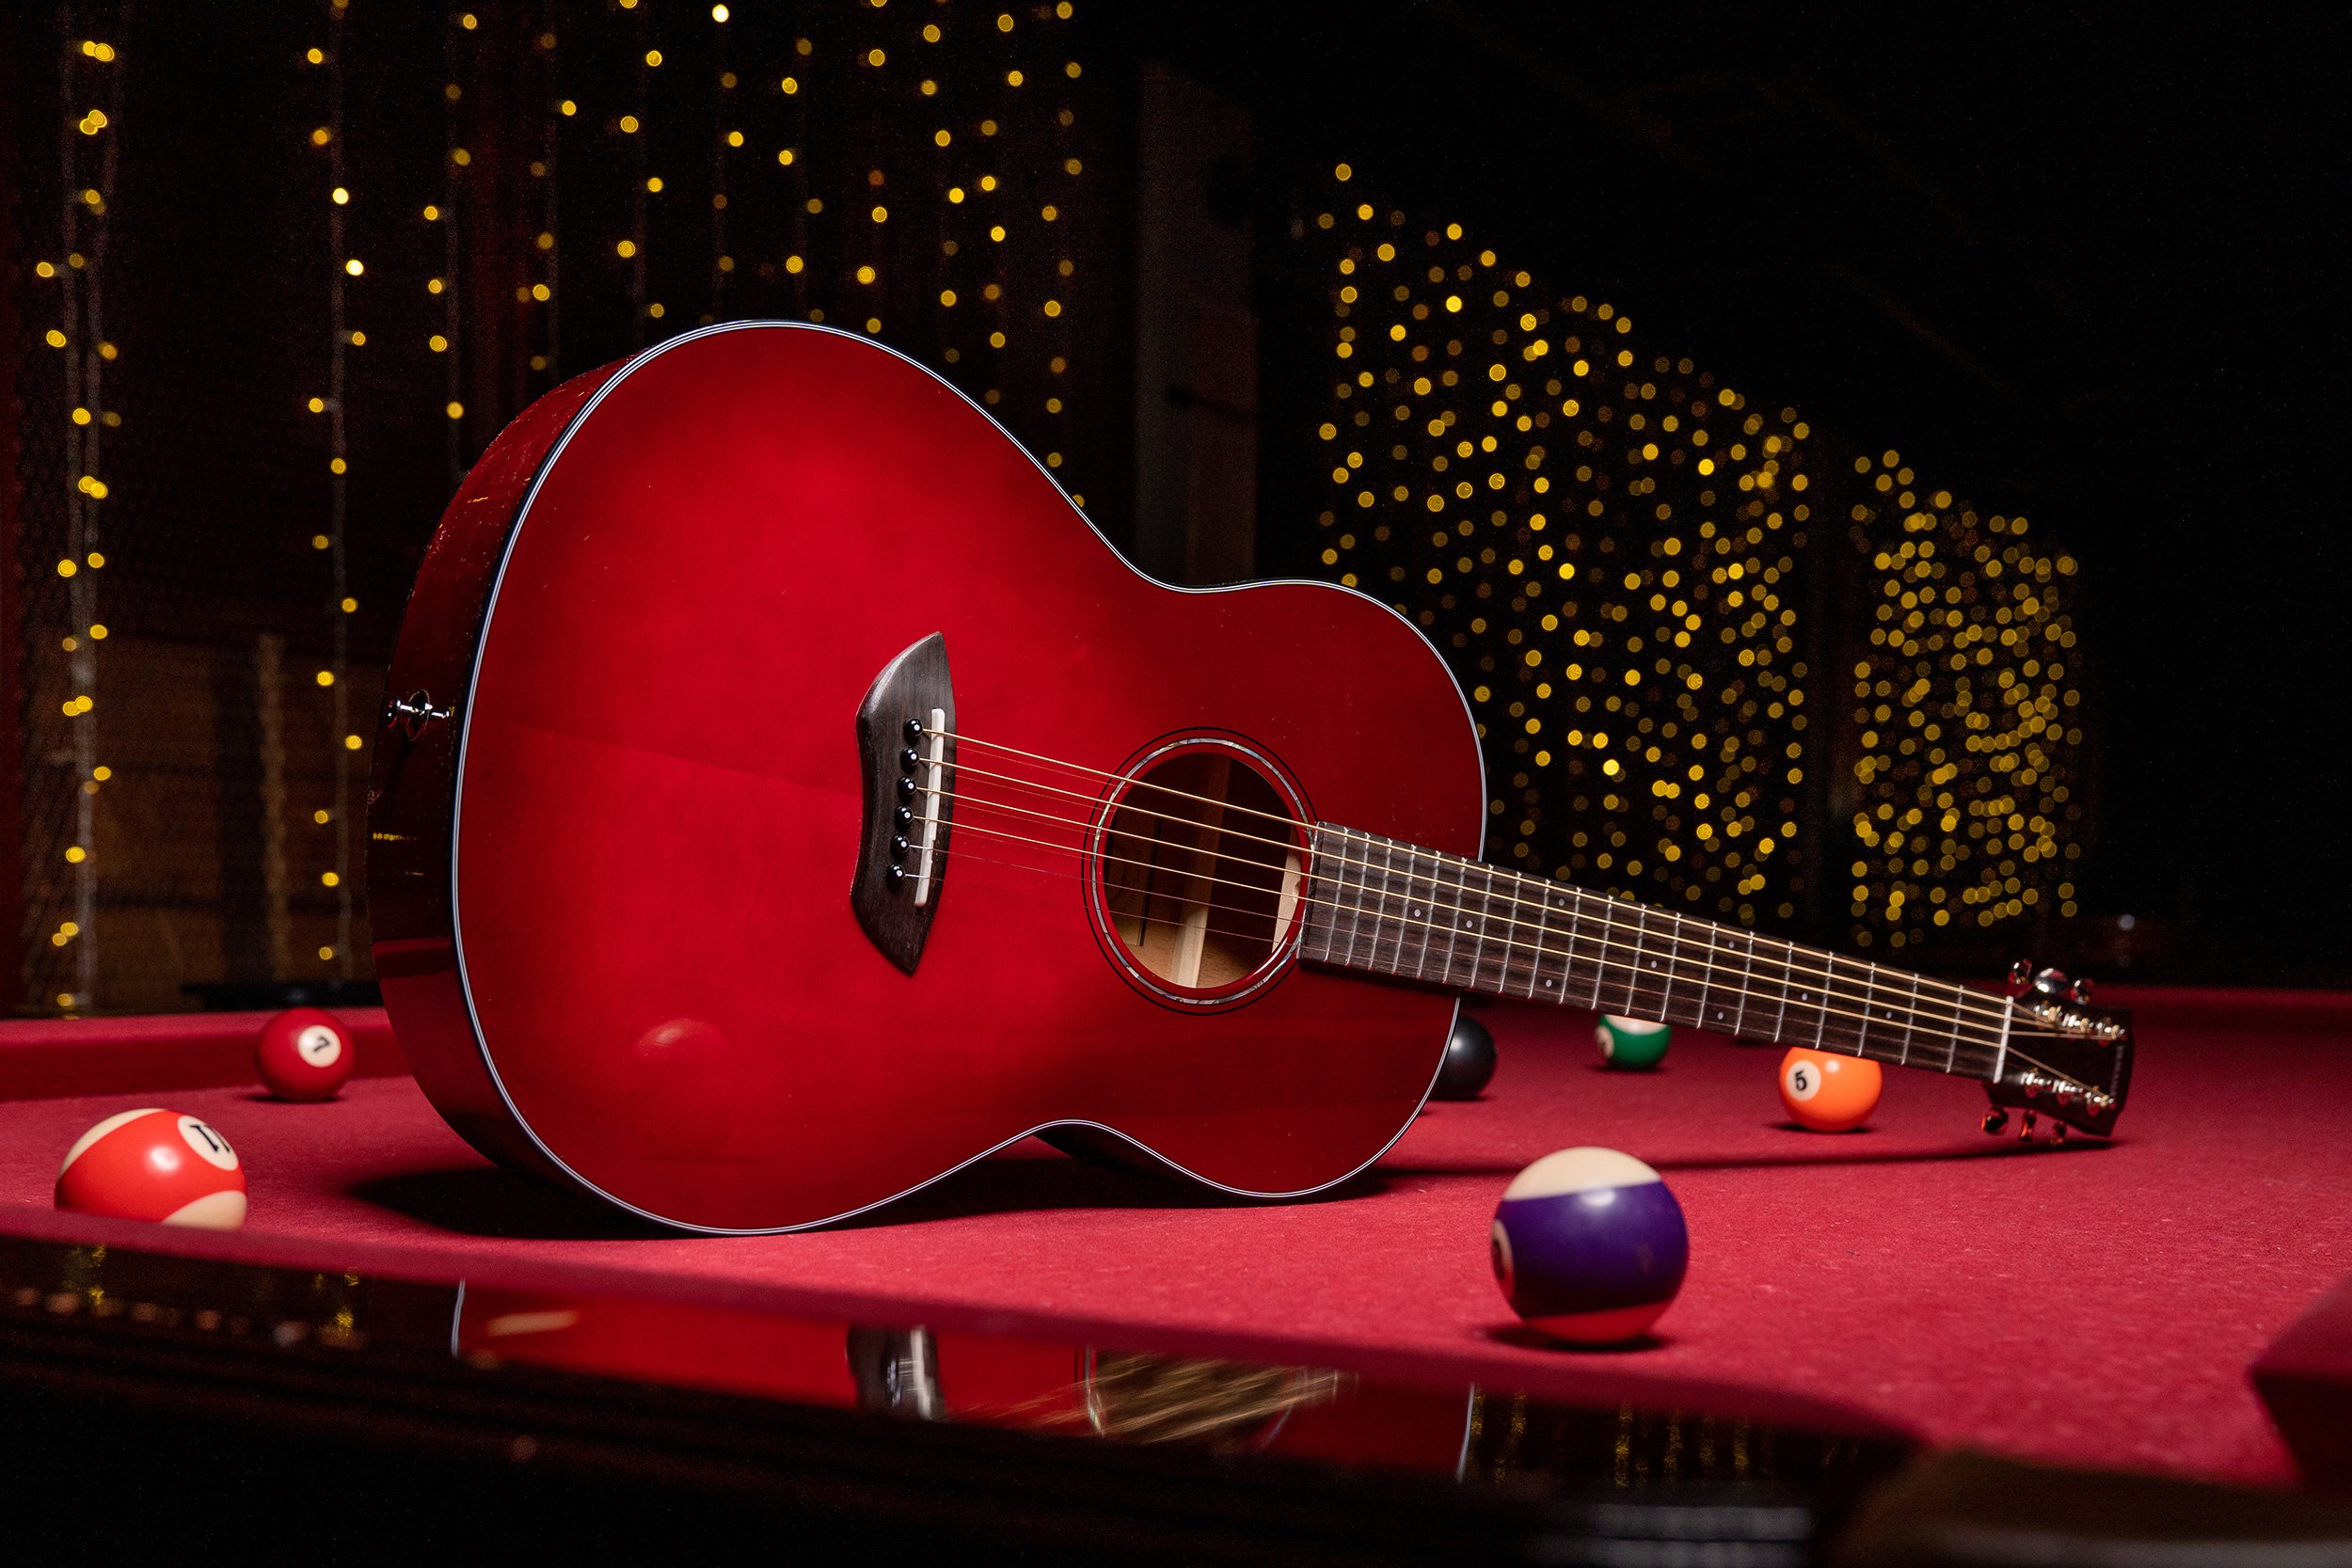 アコギ 真っ赤なボディが可愛い ヤマハのスモールサイズギターご予約受付中 島村楽器 イオンモール船橋店